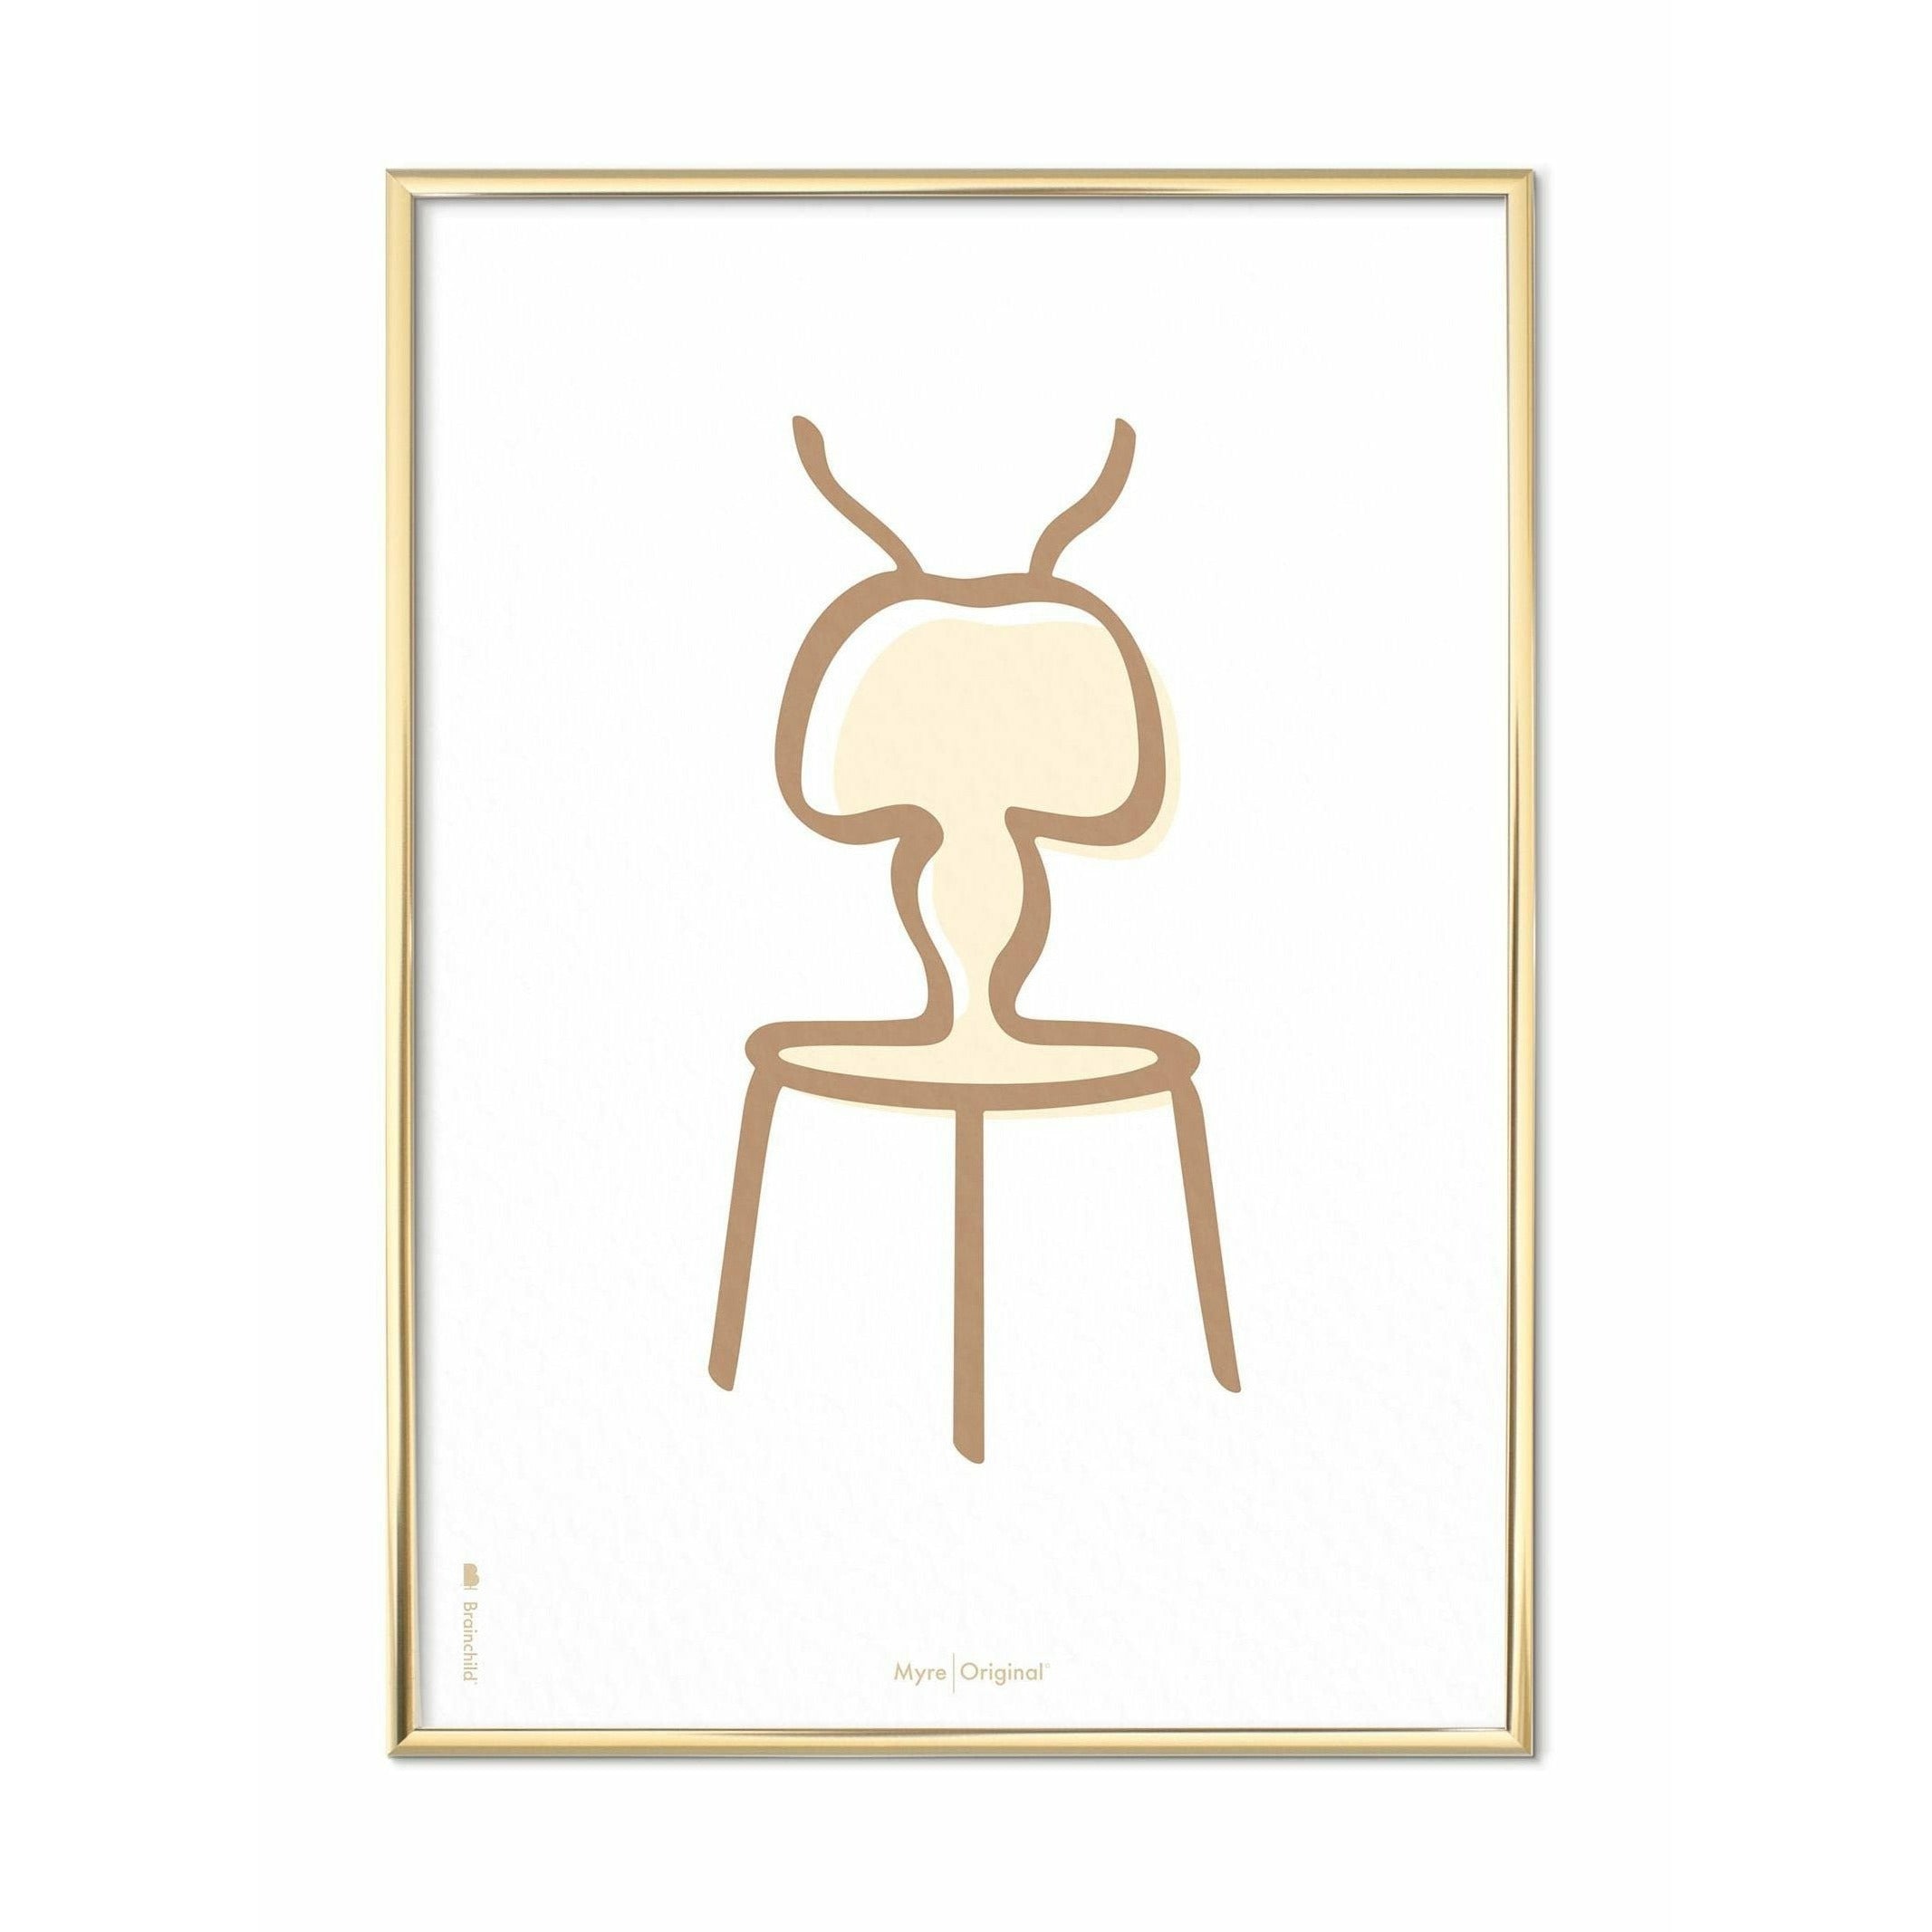 Plakát Ant Line Brainchild, mosazný barevný rám 50x70 cm, bílé pozadí